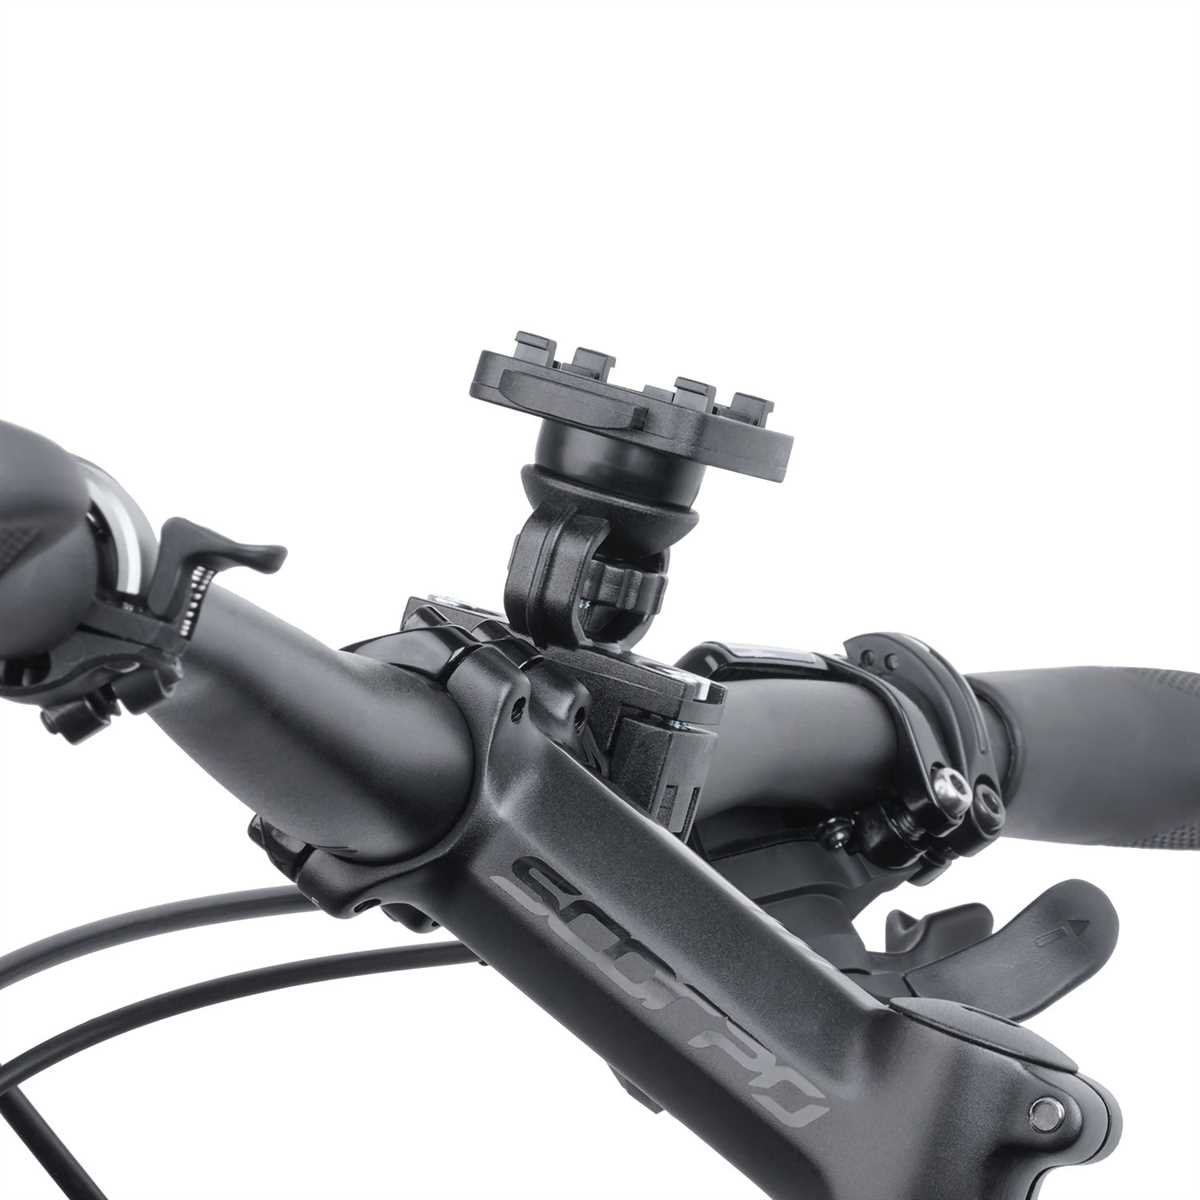 WICKED CHILI QuickMOUNT Ersatz Lenker schwarz Vorbau Fahrrad Fahrradhalterung Befestigung Kugelgelenk für Halterung, Motorradhalterung / Handy / Motorrad